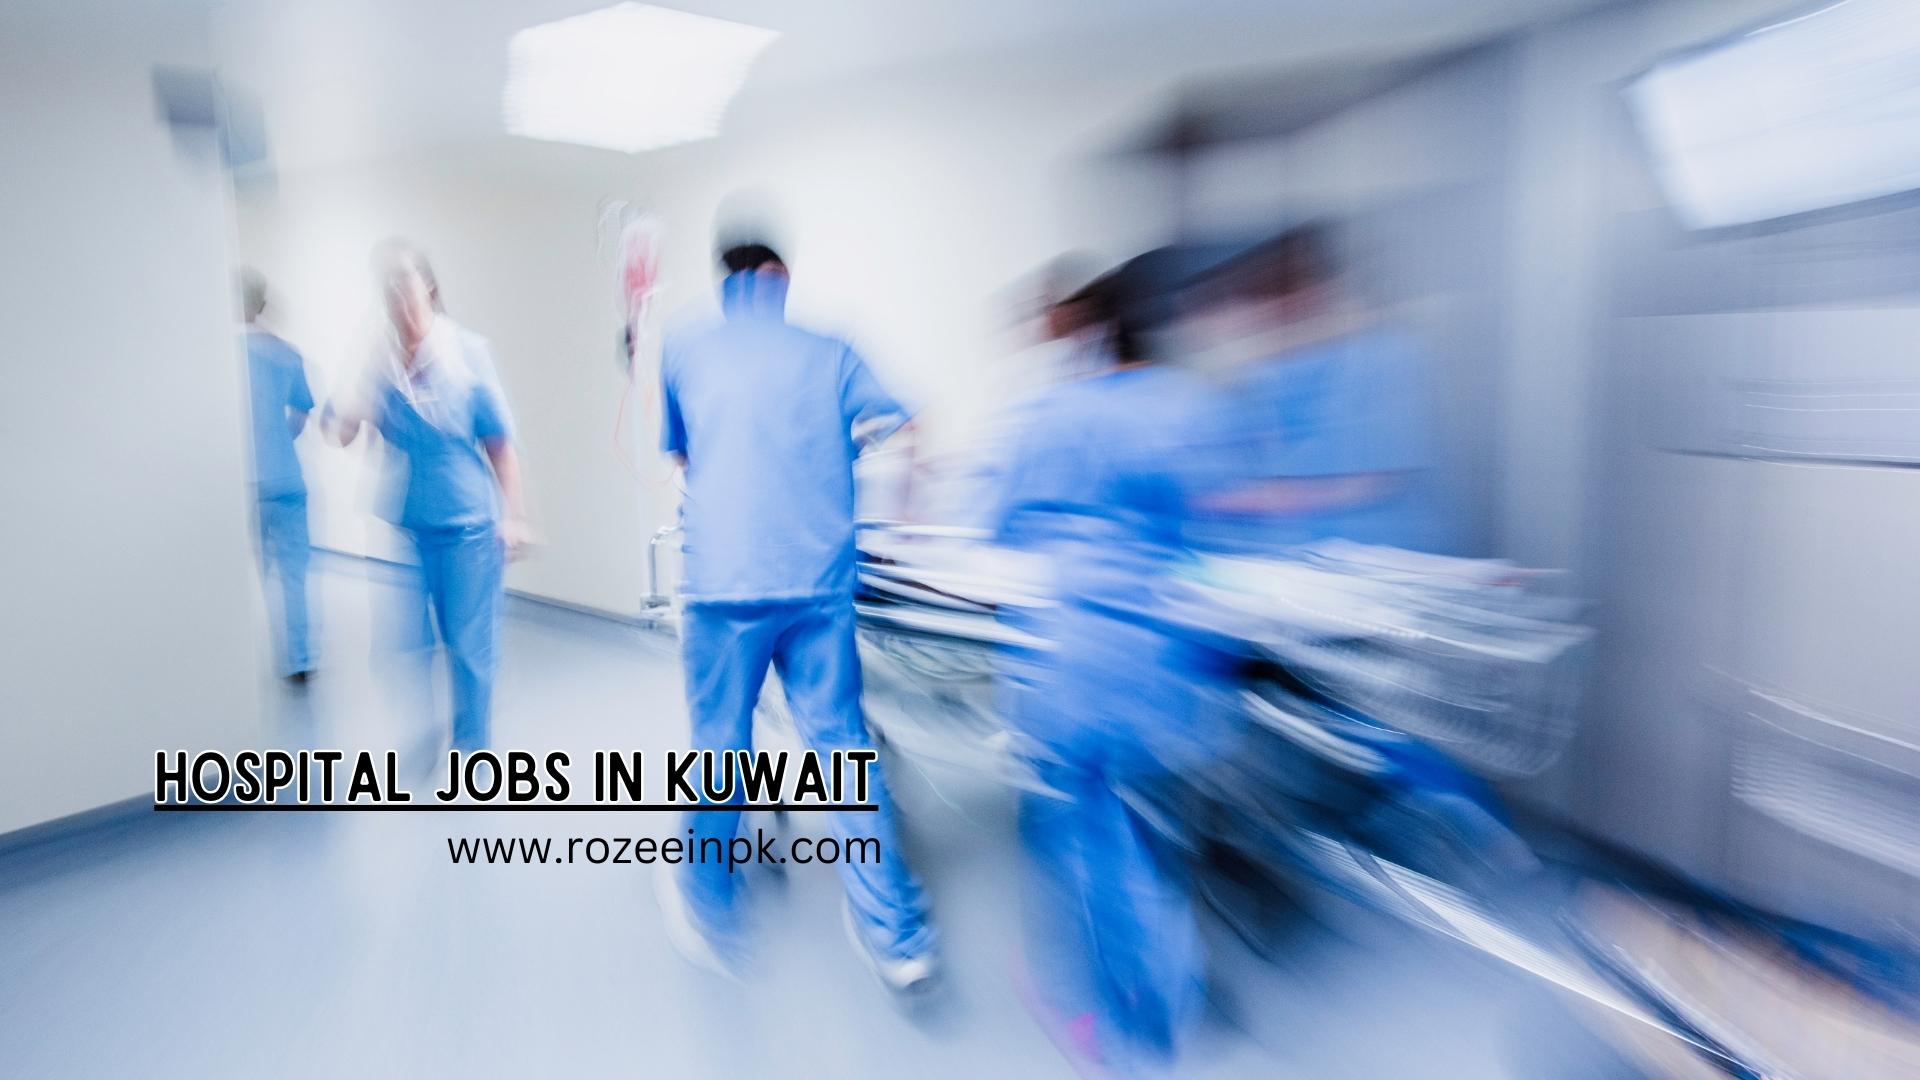 Hospital jobs in Kuwait